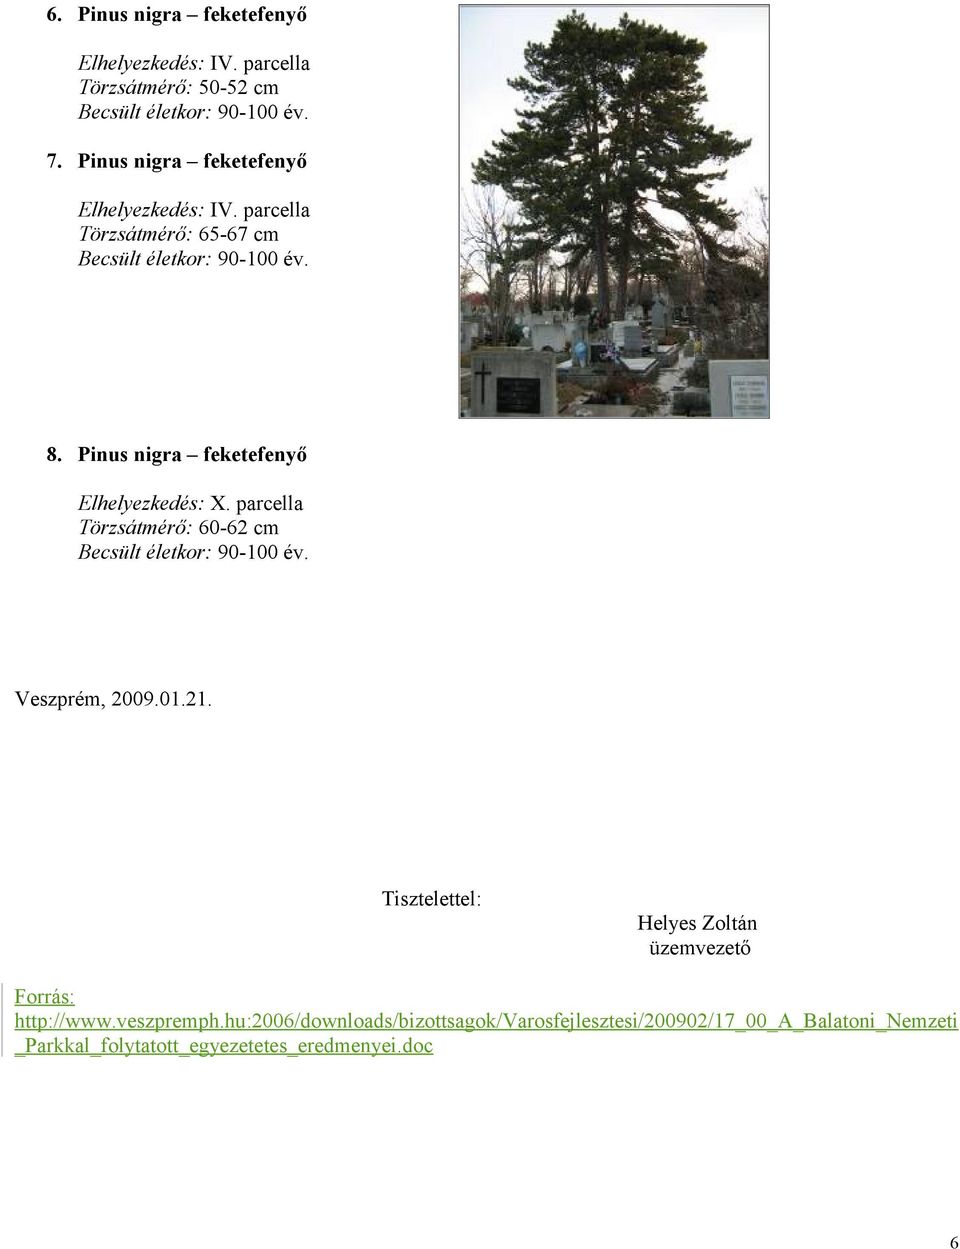 Pinus nigra feketefenyő Elhelyezkedés: X. parcella Törzsátmérő: 60-62 cm Veszprém, 2009.01.21.